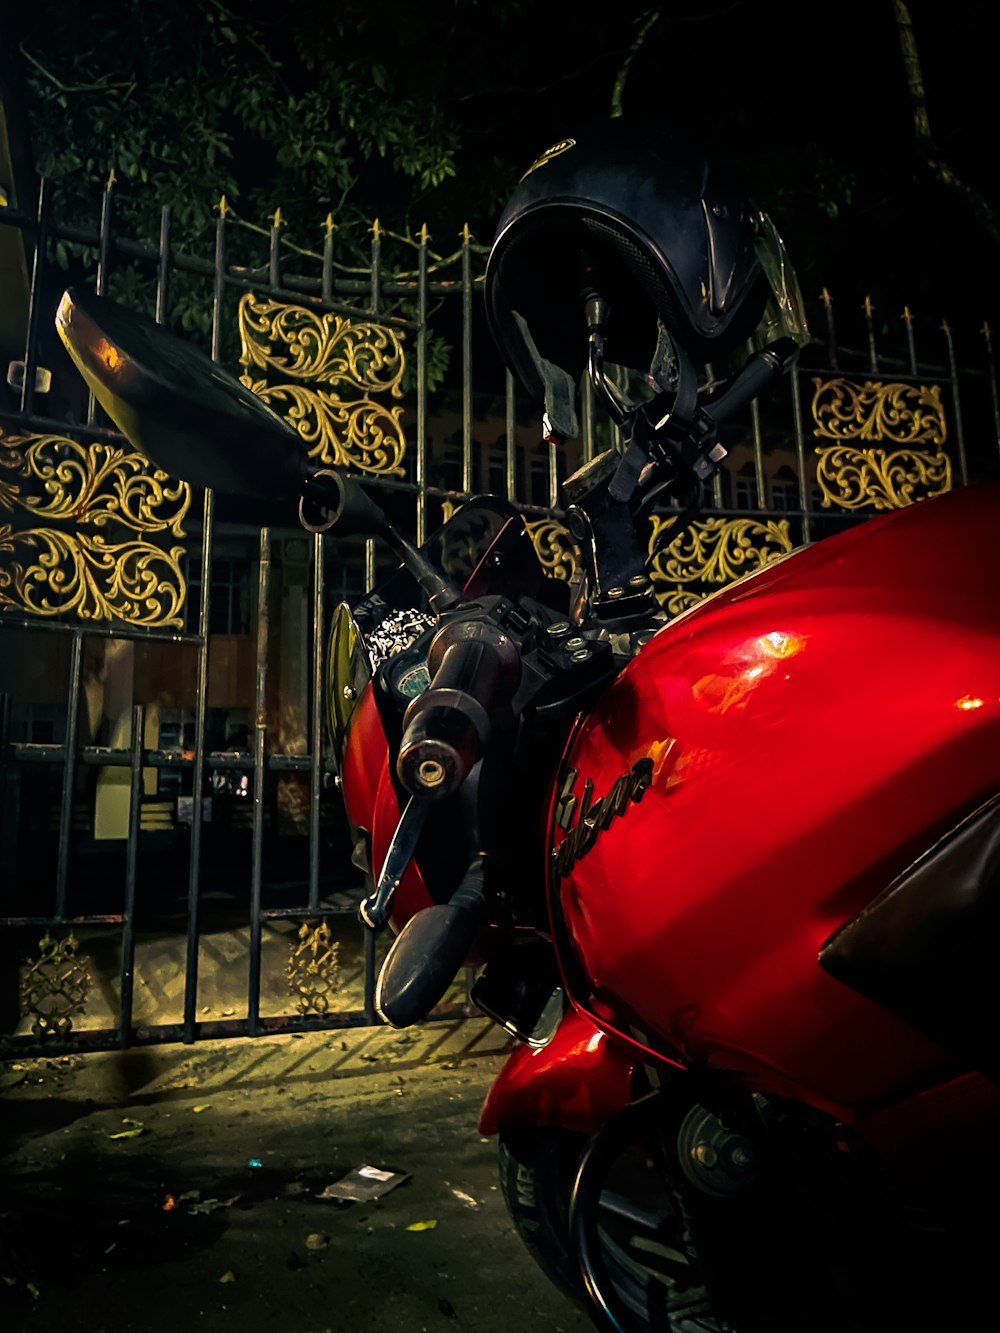 Una moto rossa parcheggiata davanti a un cancello